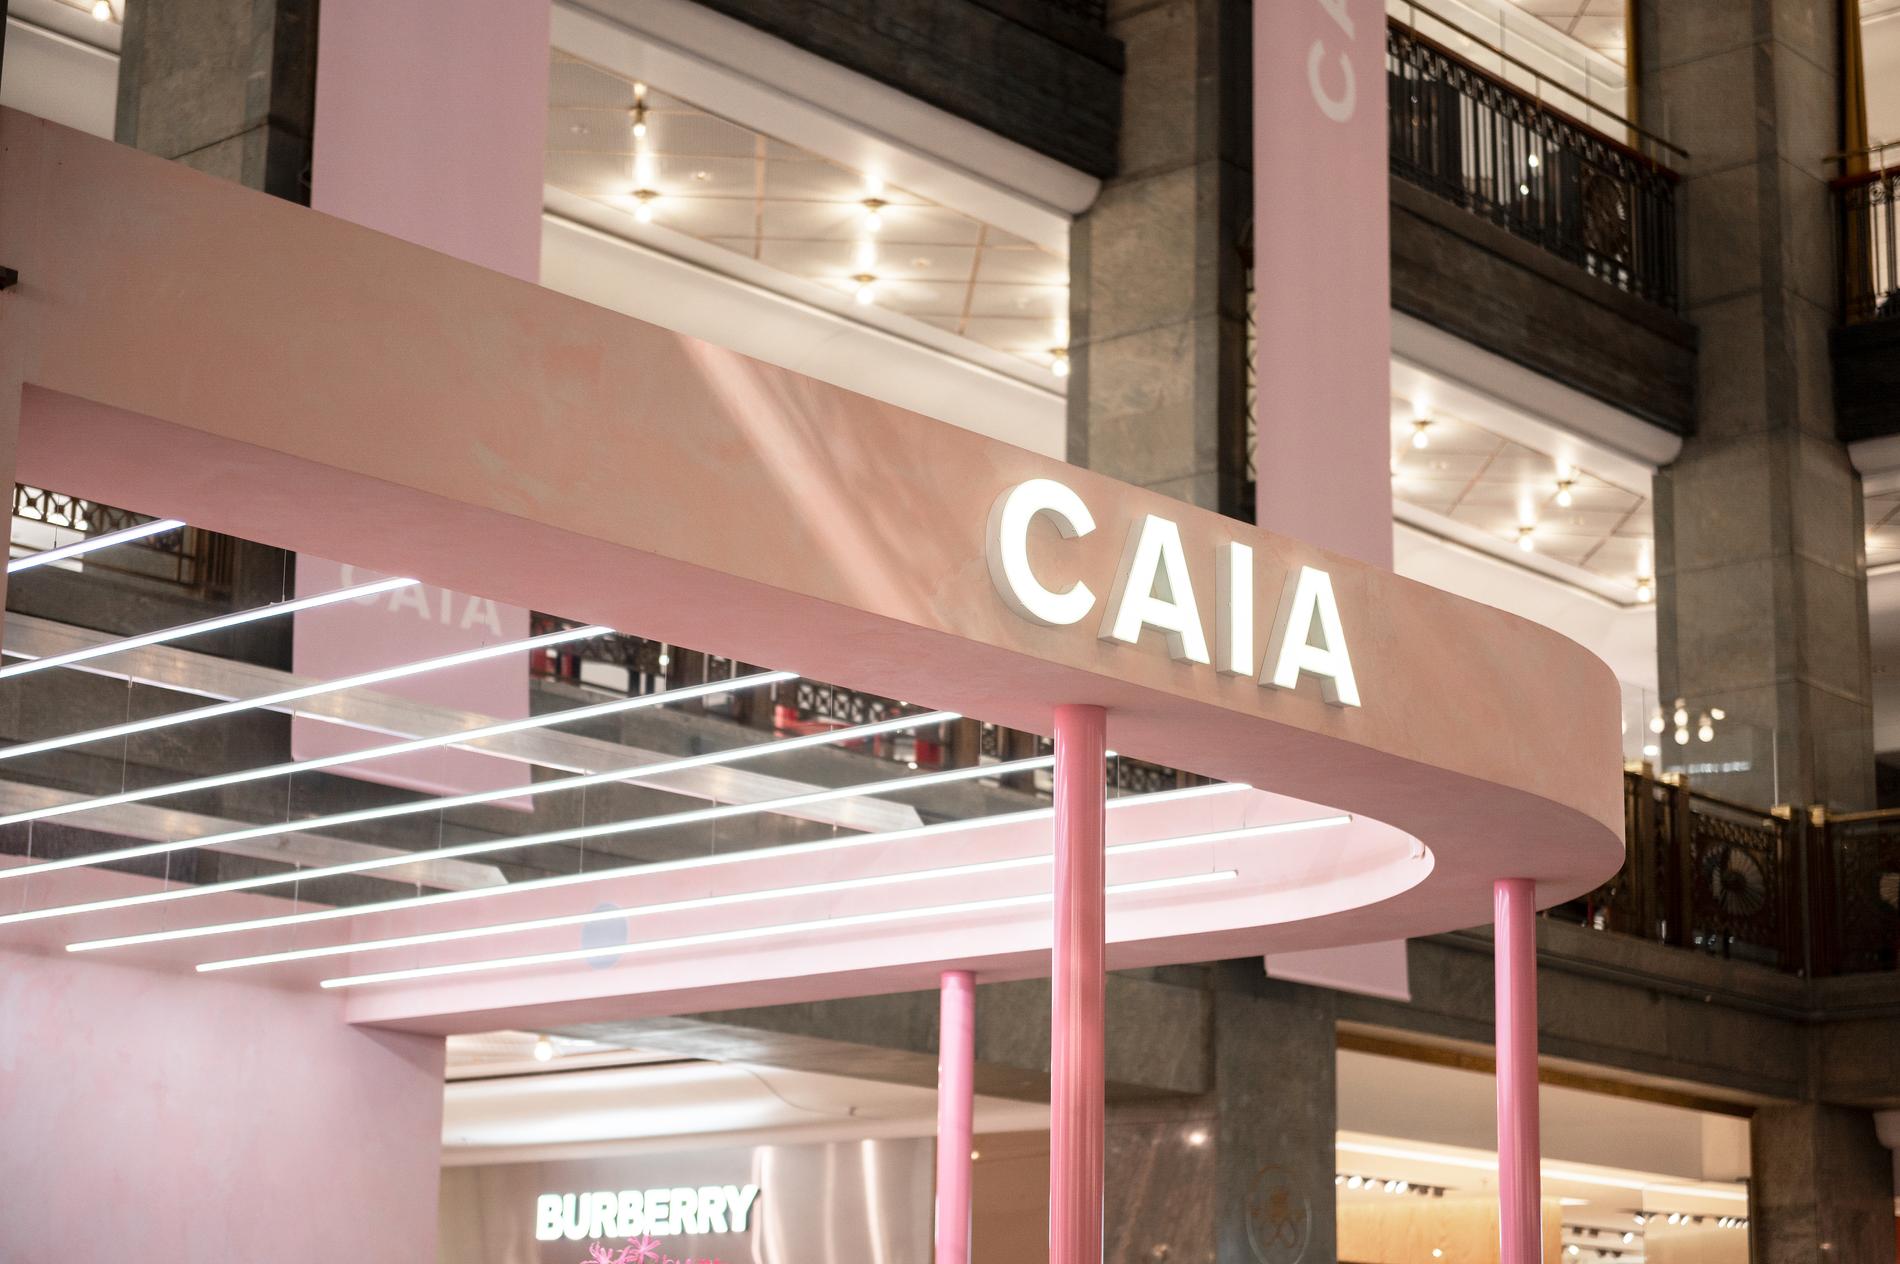 Caia cosmetics är på väg att säljas, enligt sajten Breakit. 